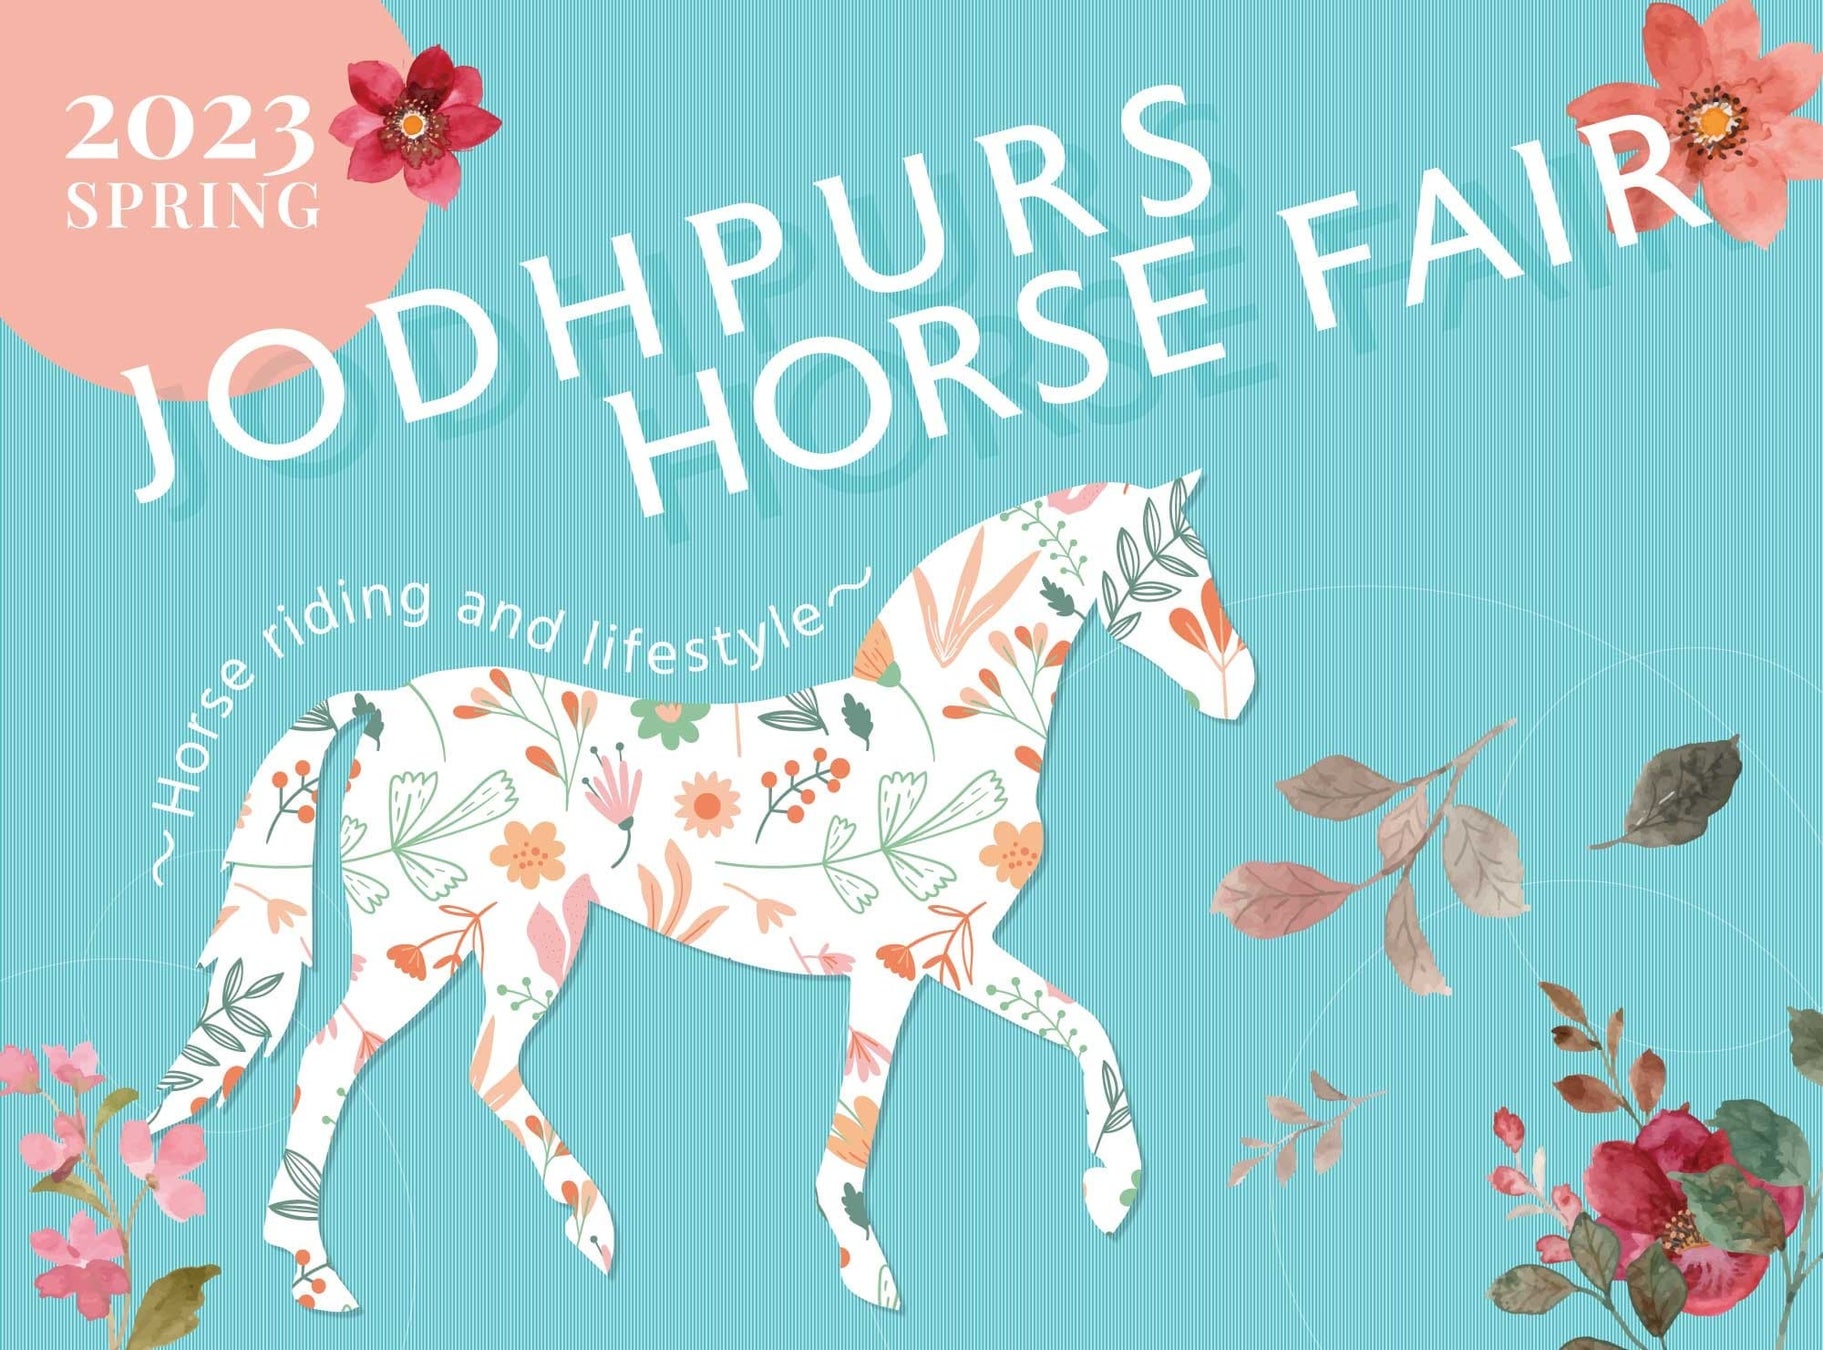 馬や乗馬に関するモノやコトを集めたイベント『JODHPURS ホースフェア』3月31日よりエルおおさかにて開催のサブ画像1